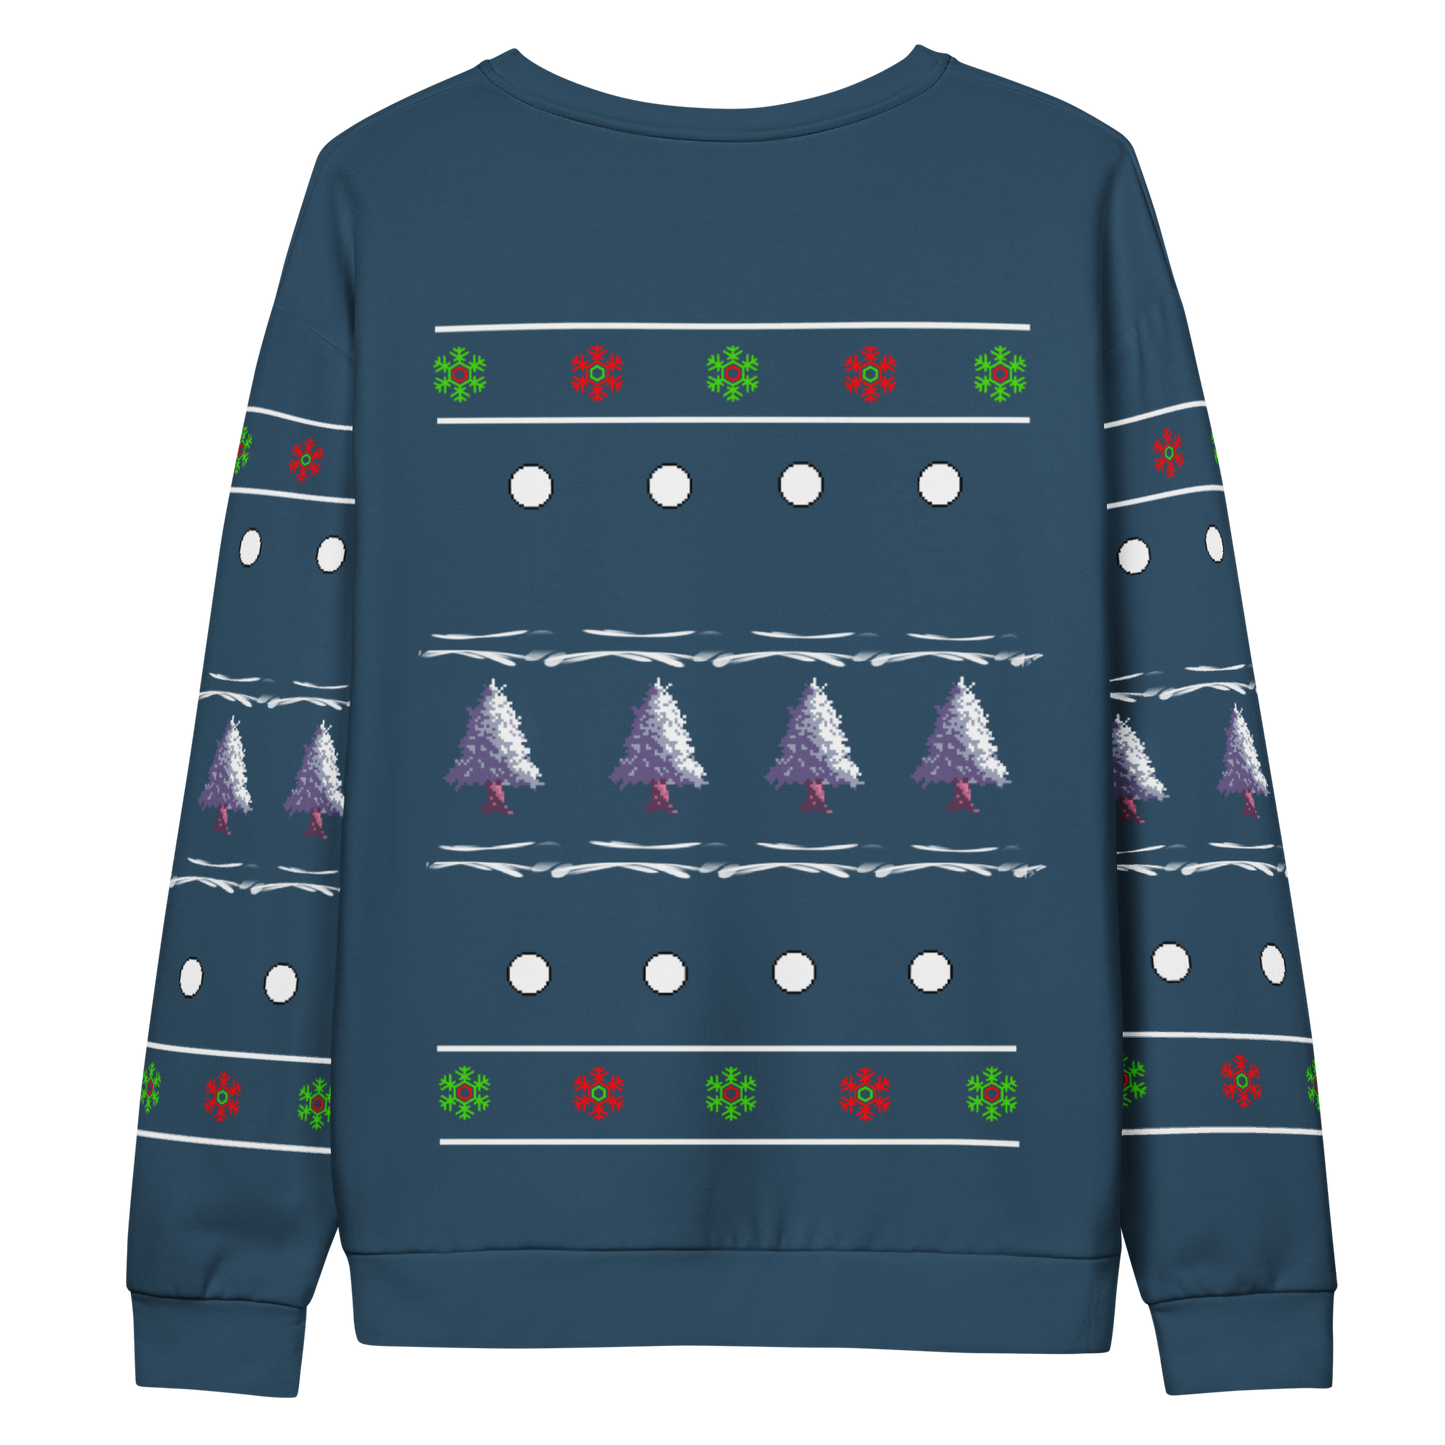 Bigfoot's Christmas Christmas Sweater